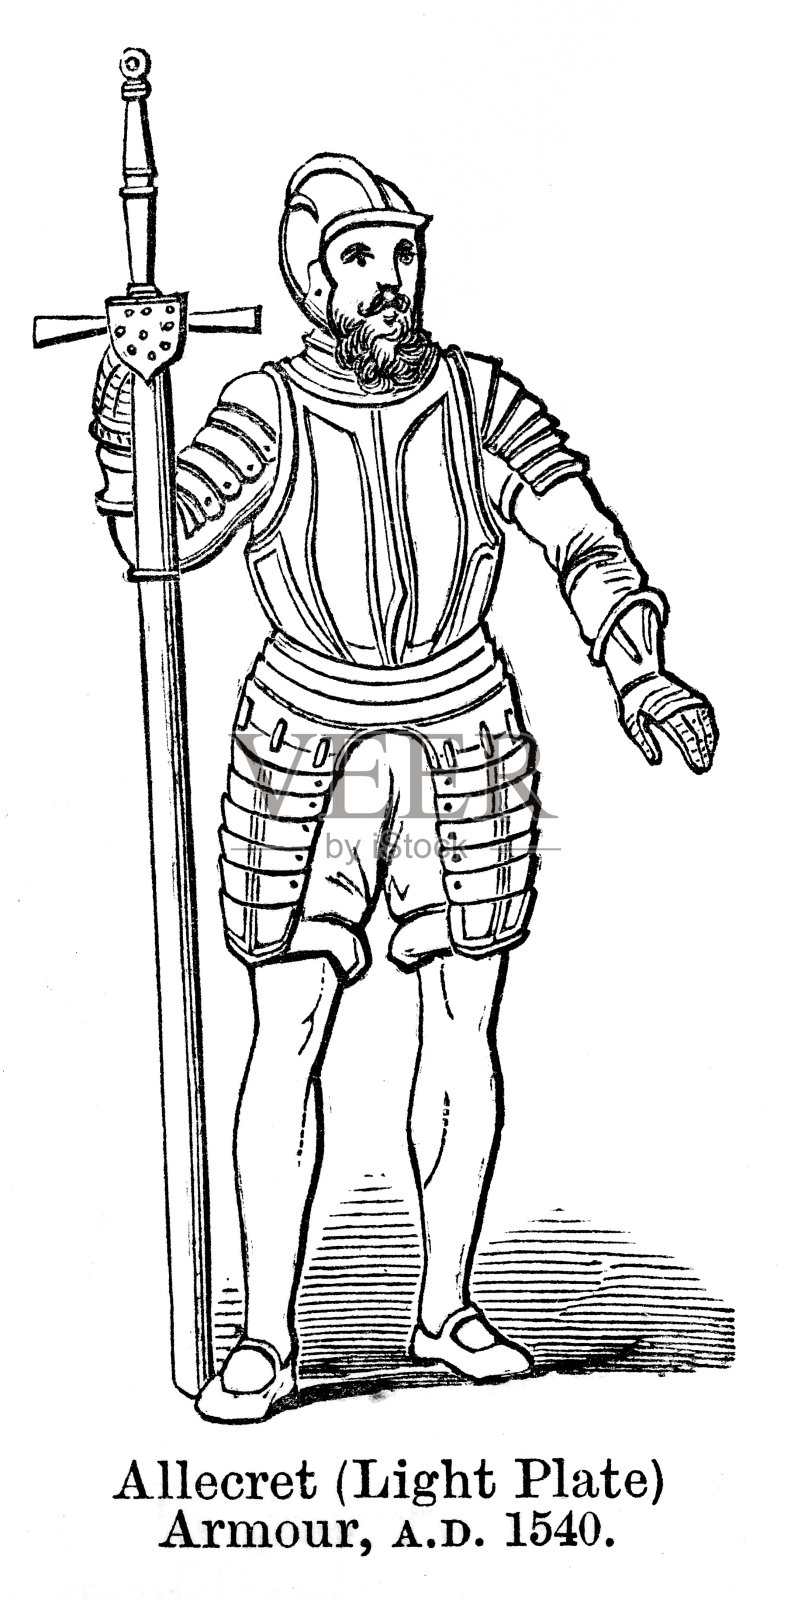 阿勒克瑞特(轻板)装甲约1540年设计元素图片